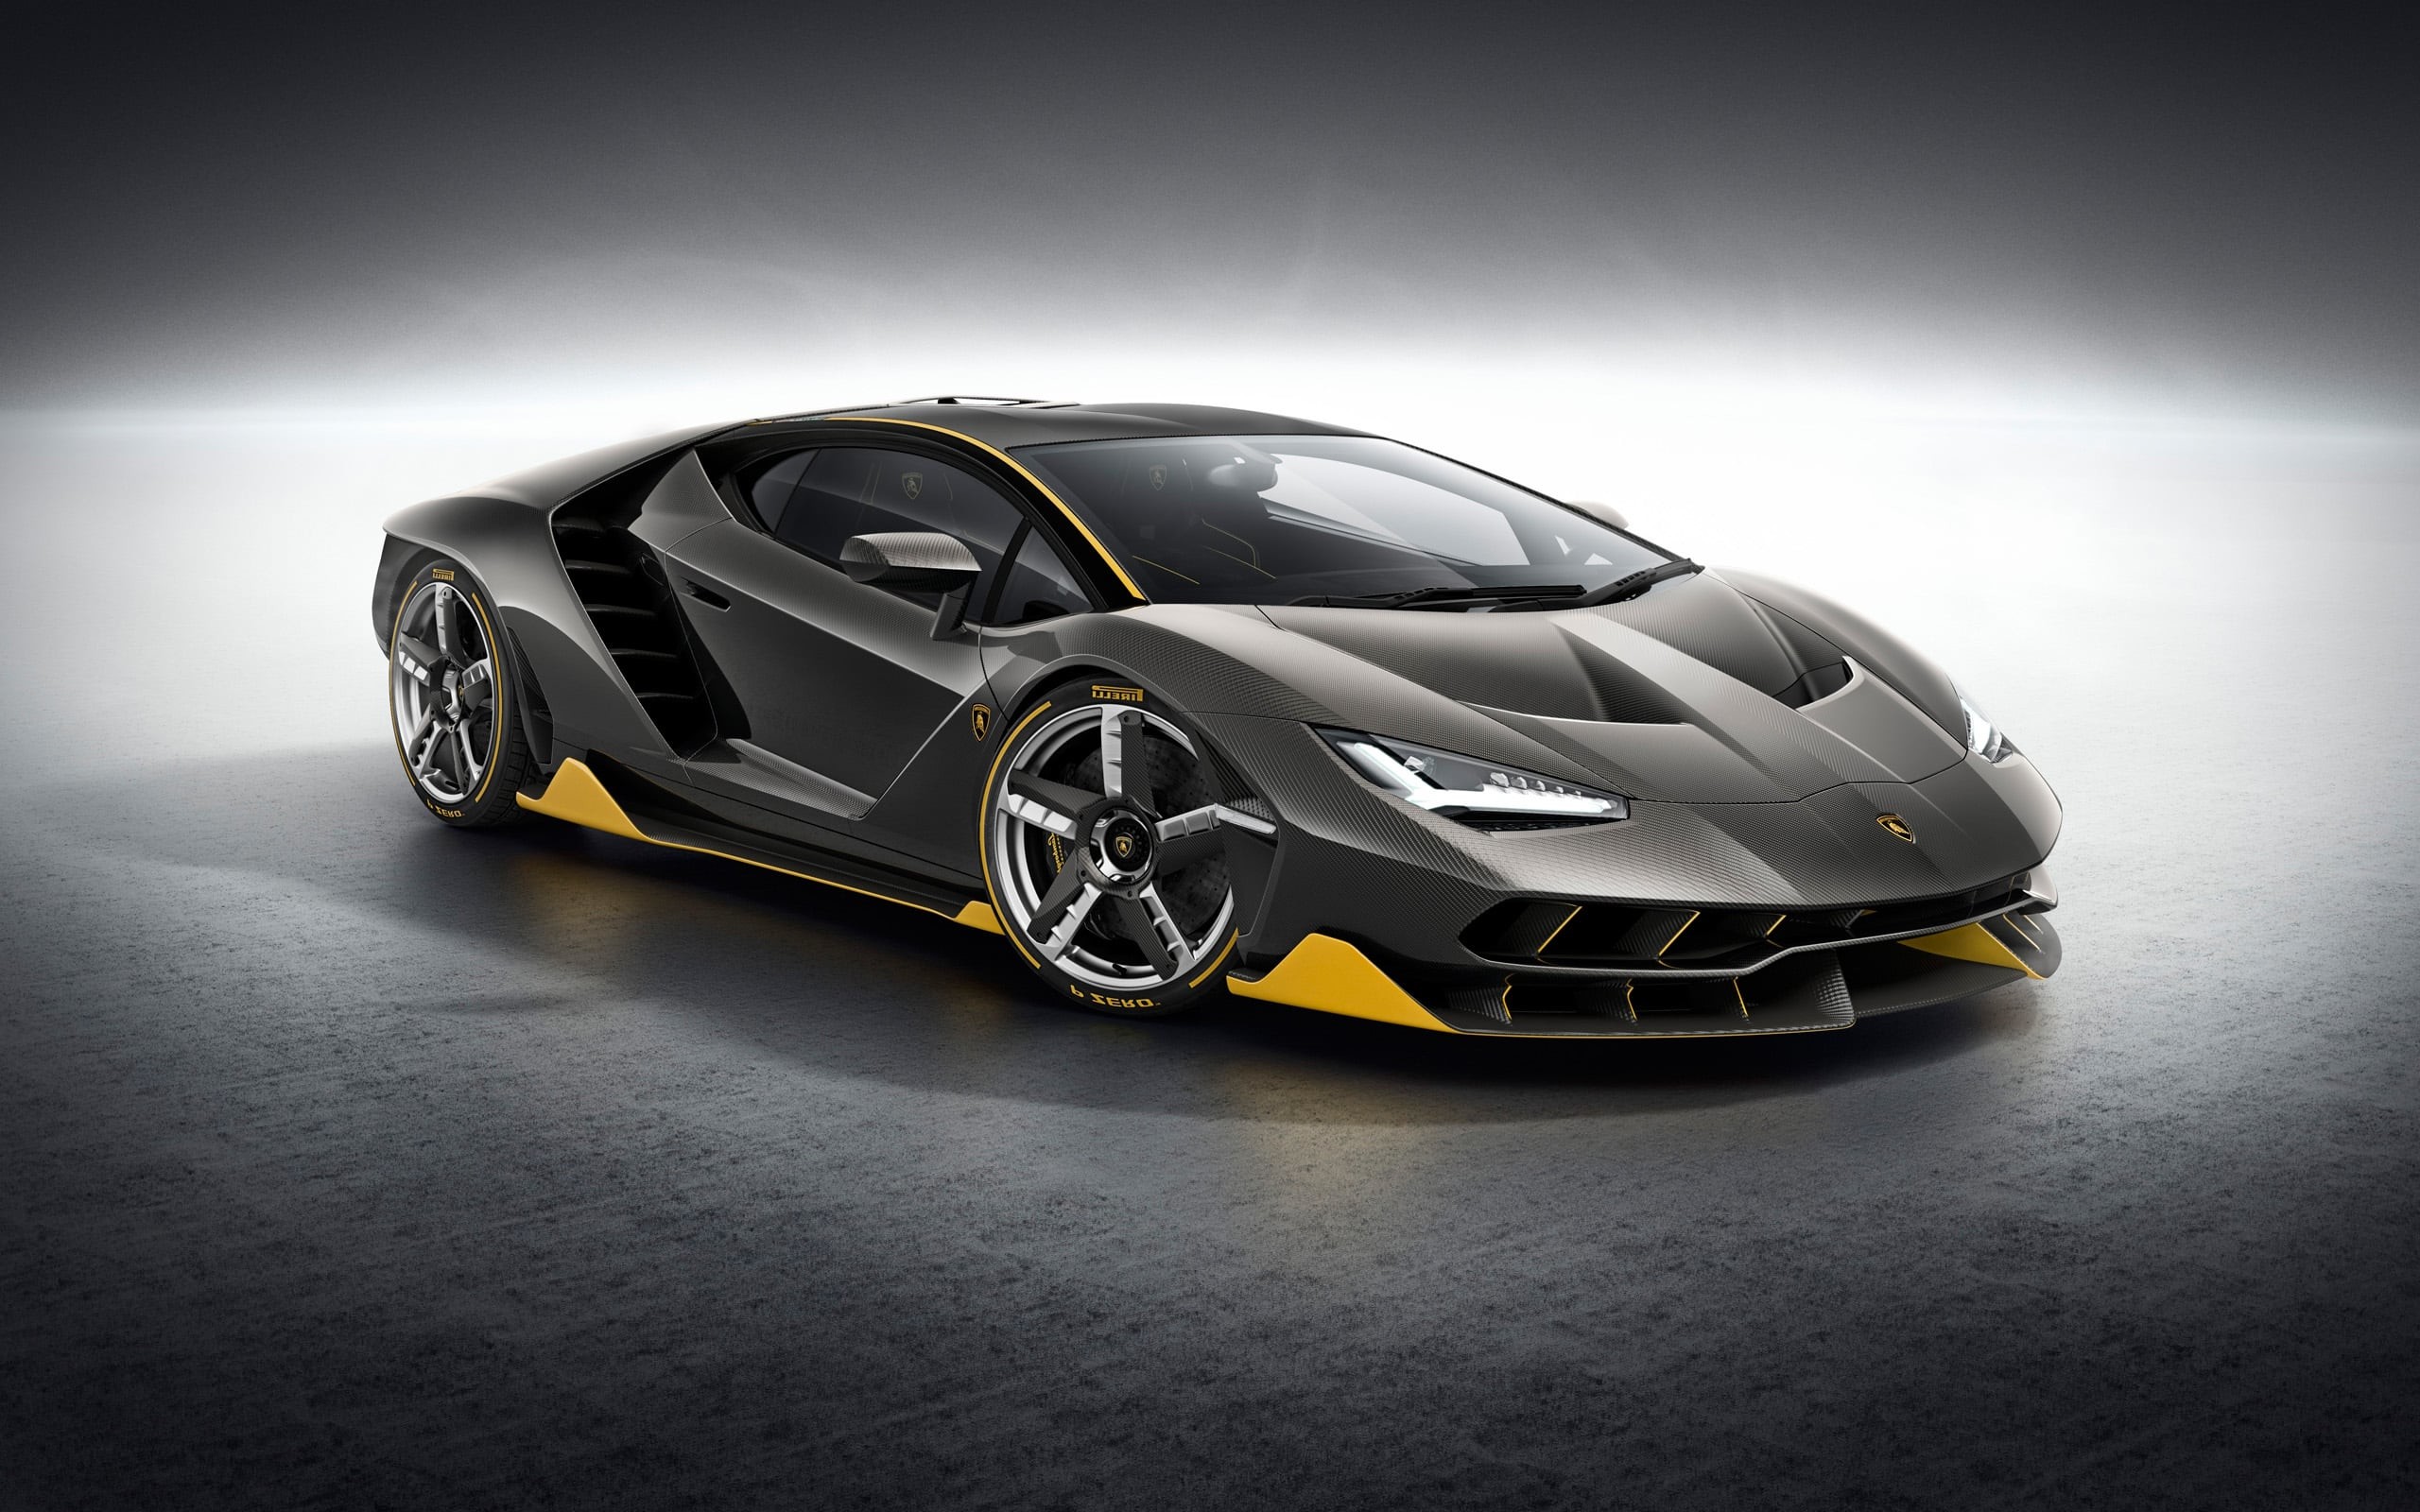 2560x1600 Lamborghini-Centenario-LP770-4-HD-Wallpaper.jpg (2560Ã1600) | Cars |  Pinterest | Cars